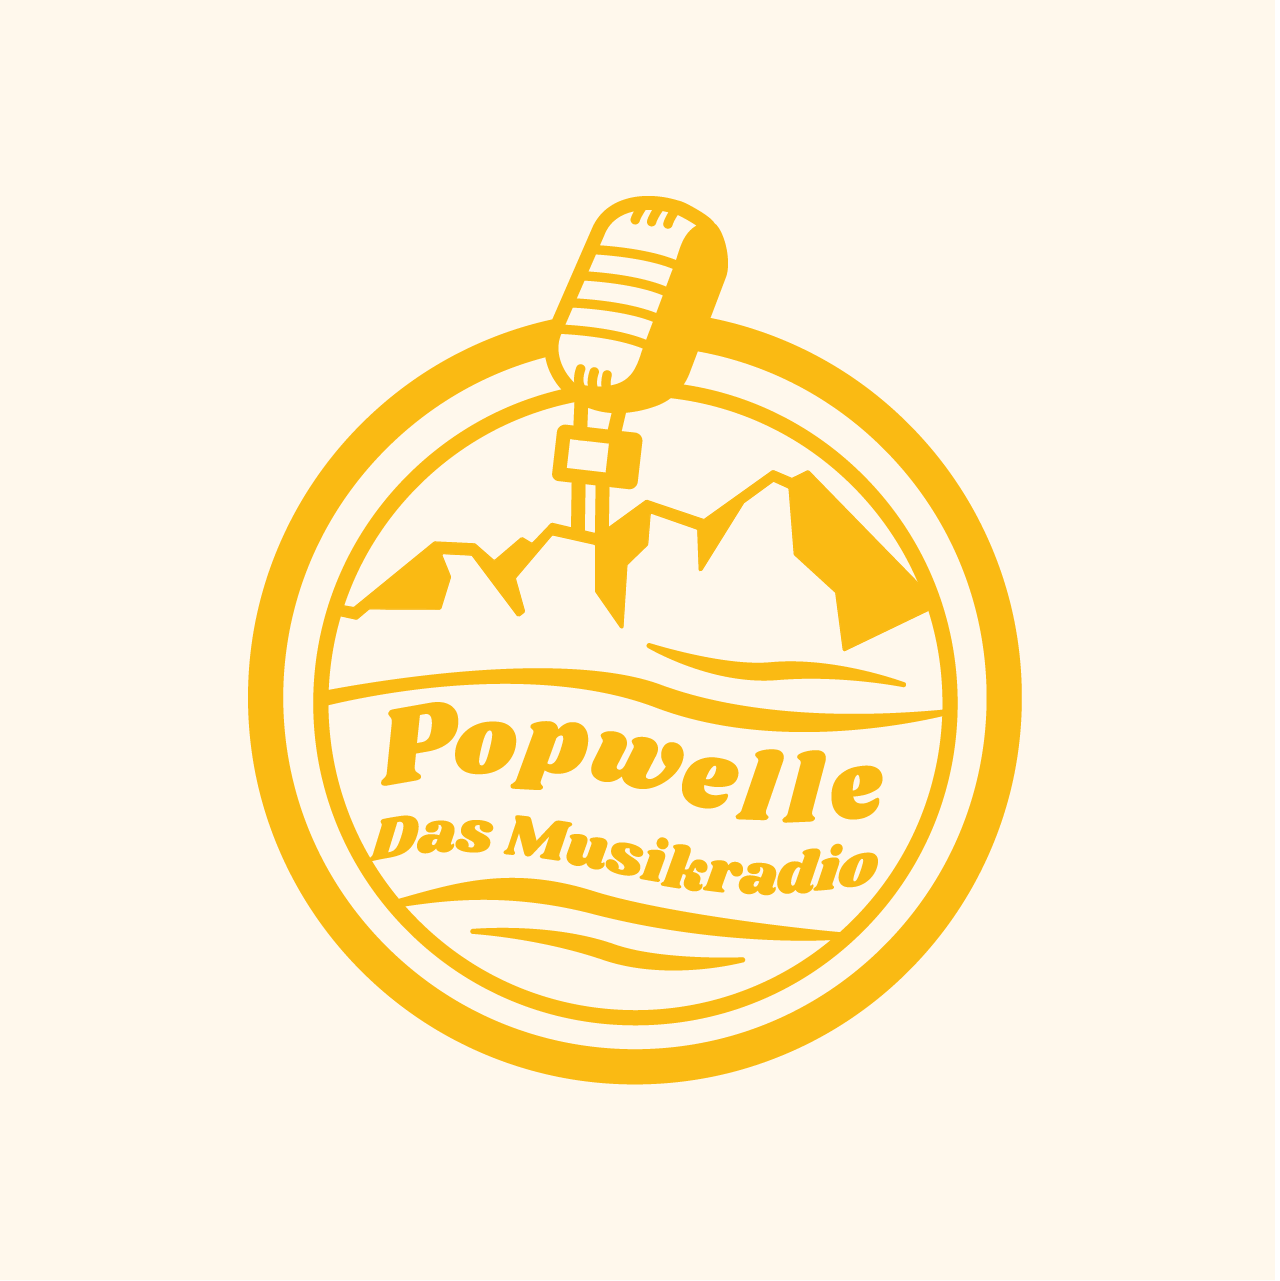 Popwelle